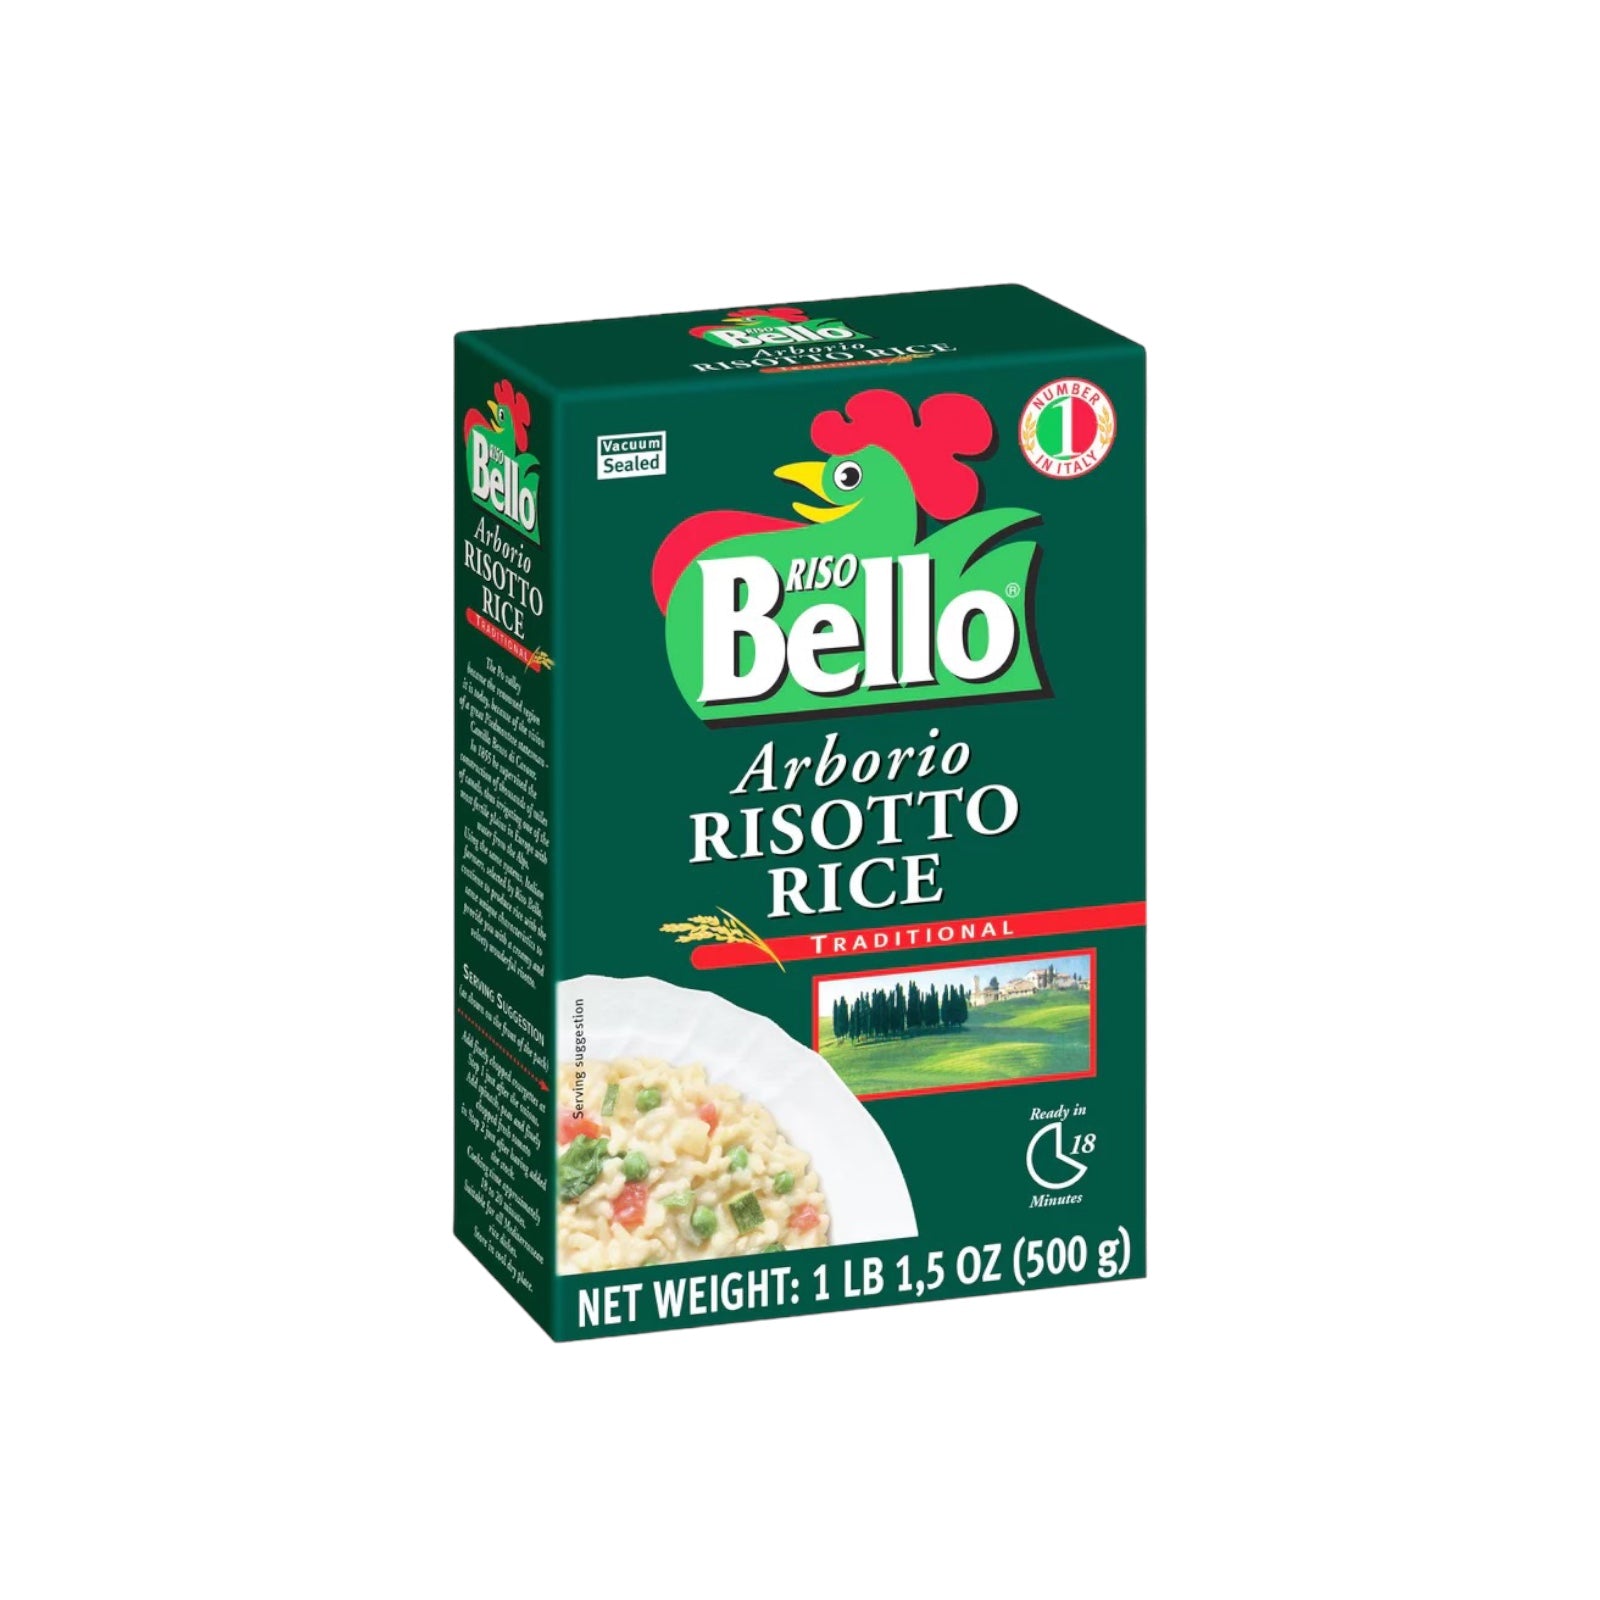 Arborio Risotto Rice By Riso Bello 500g